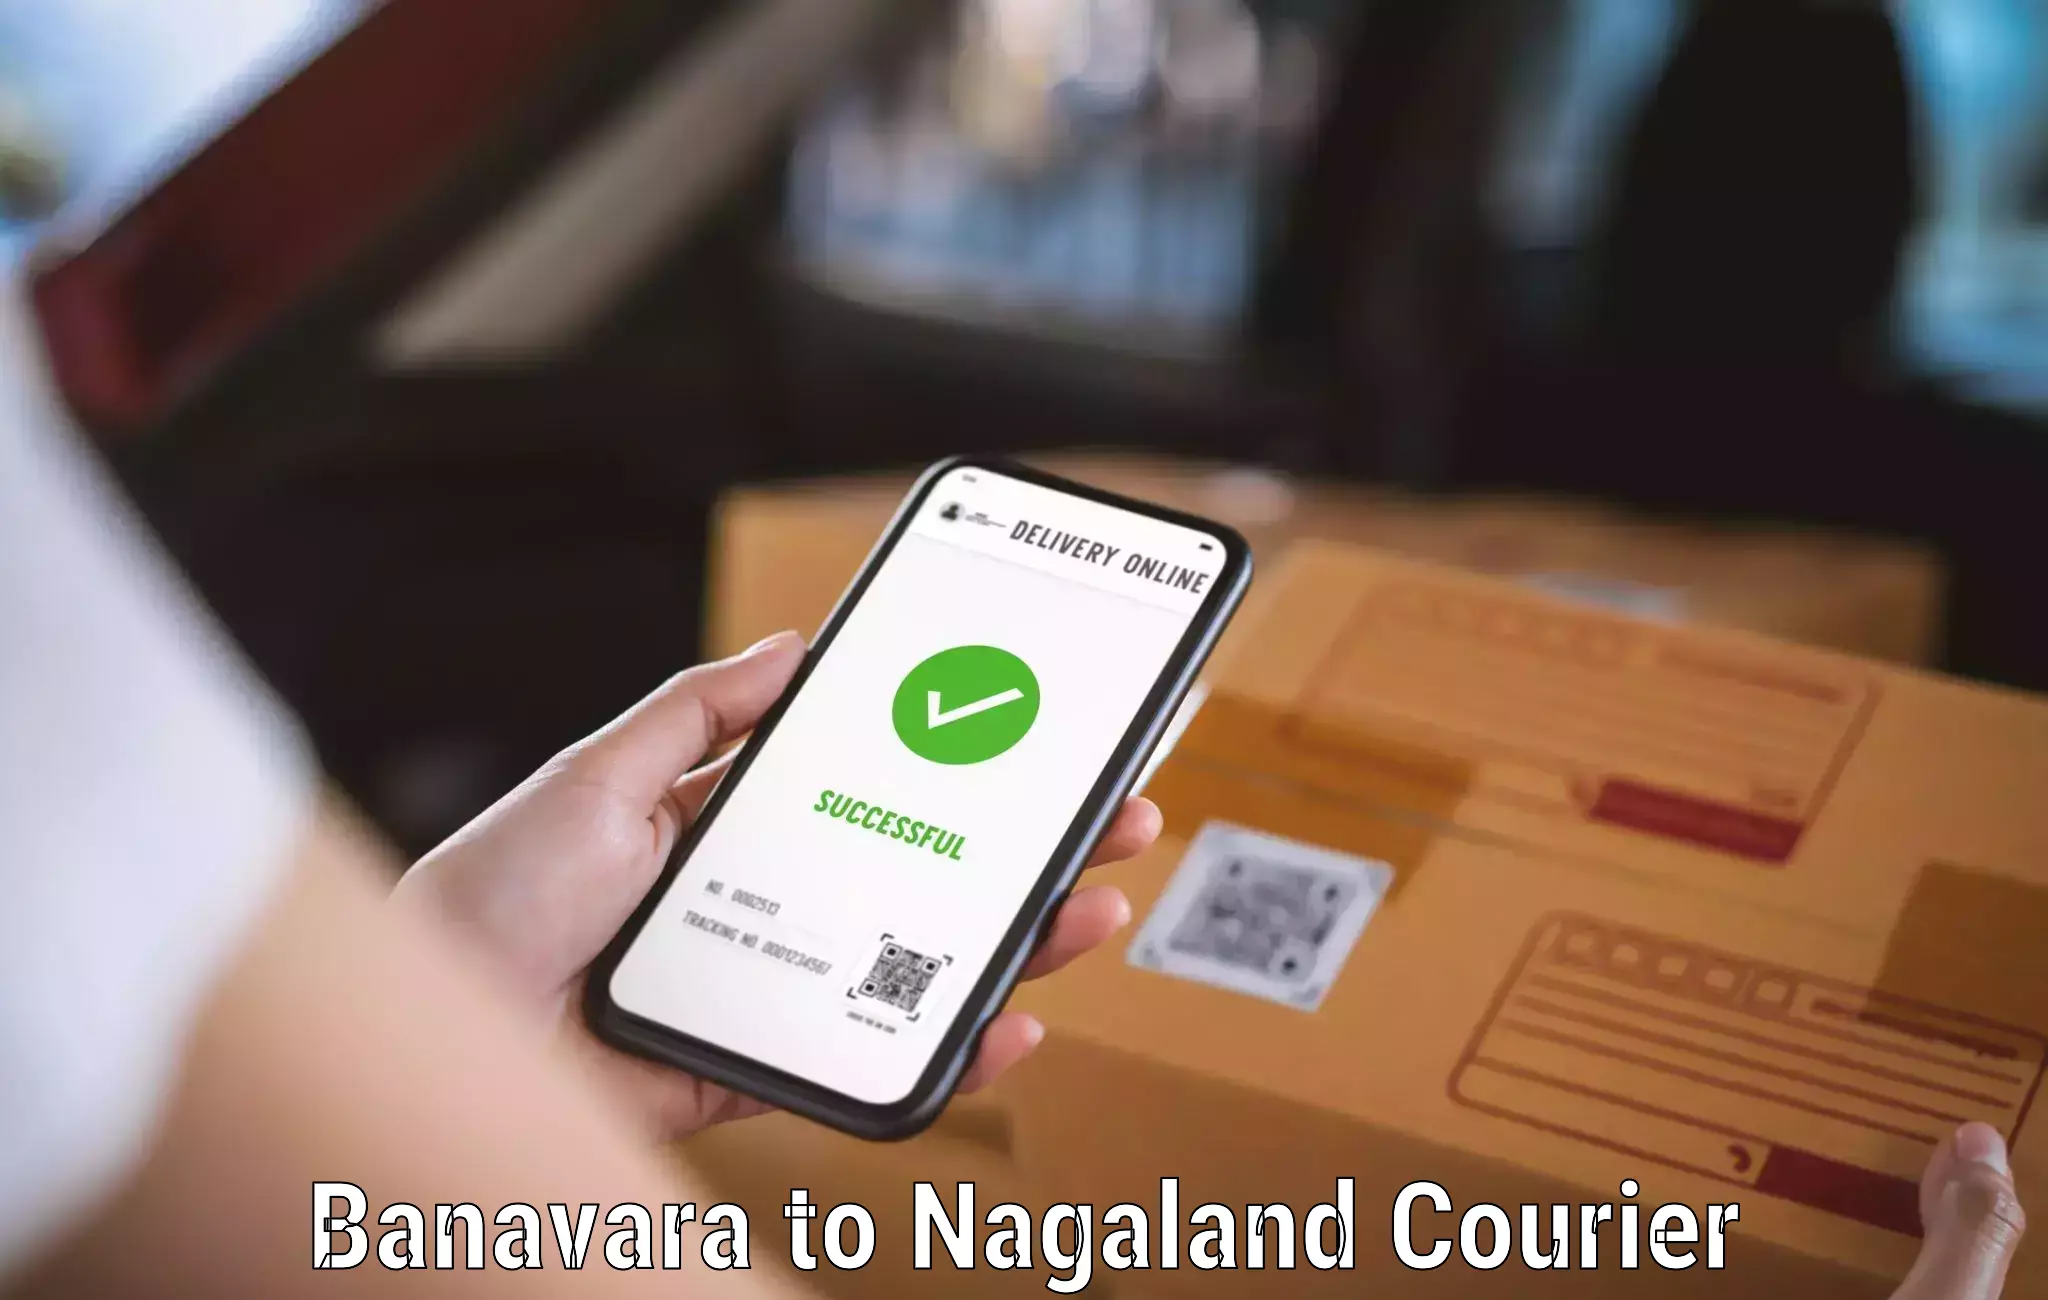 Fast-track shipping solutions Banavara to Nagaland